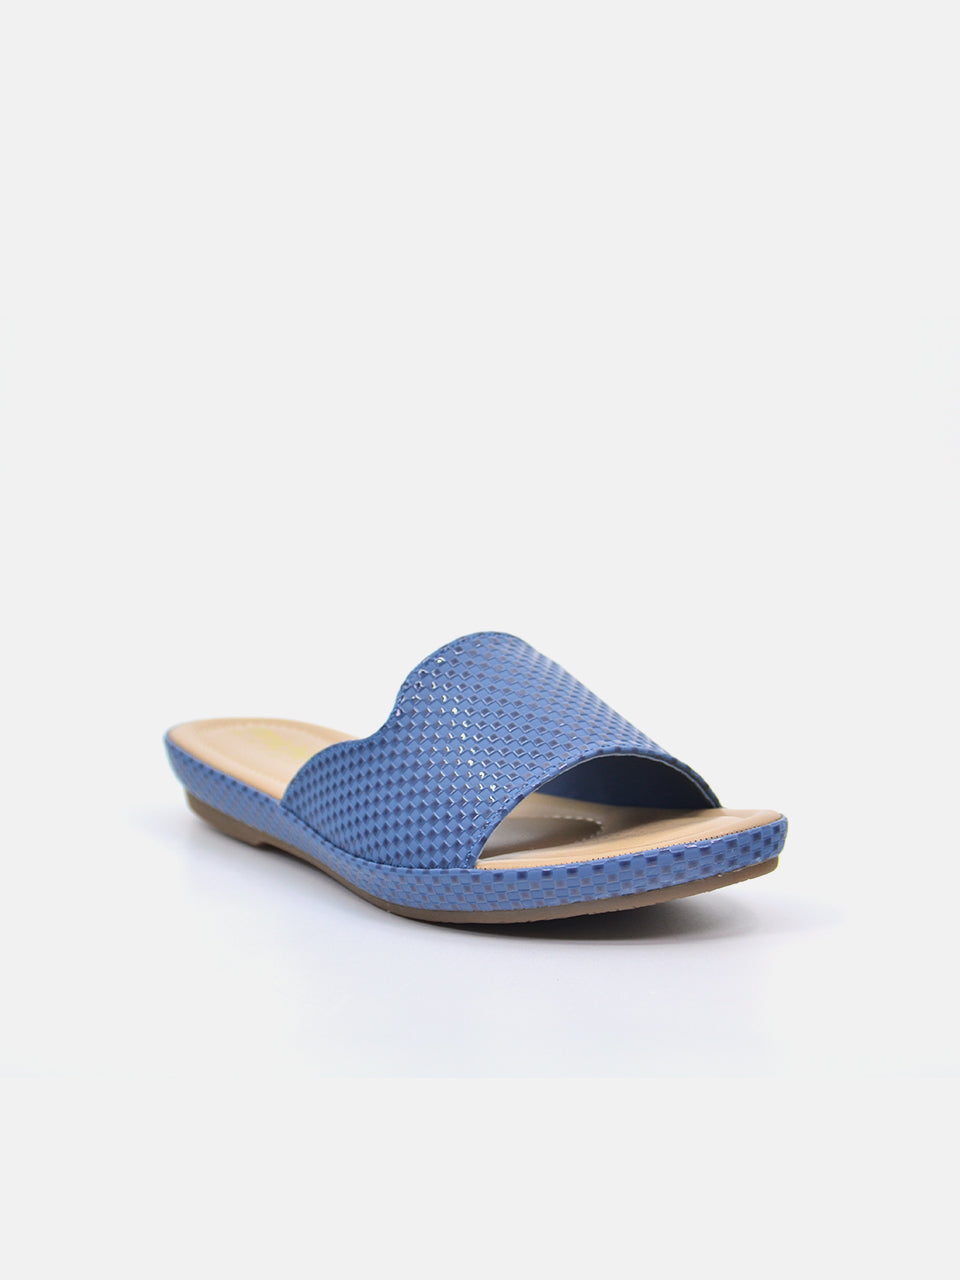 Michelle Morgan 114RC671 Women's Flat Sandals #color_Blue